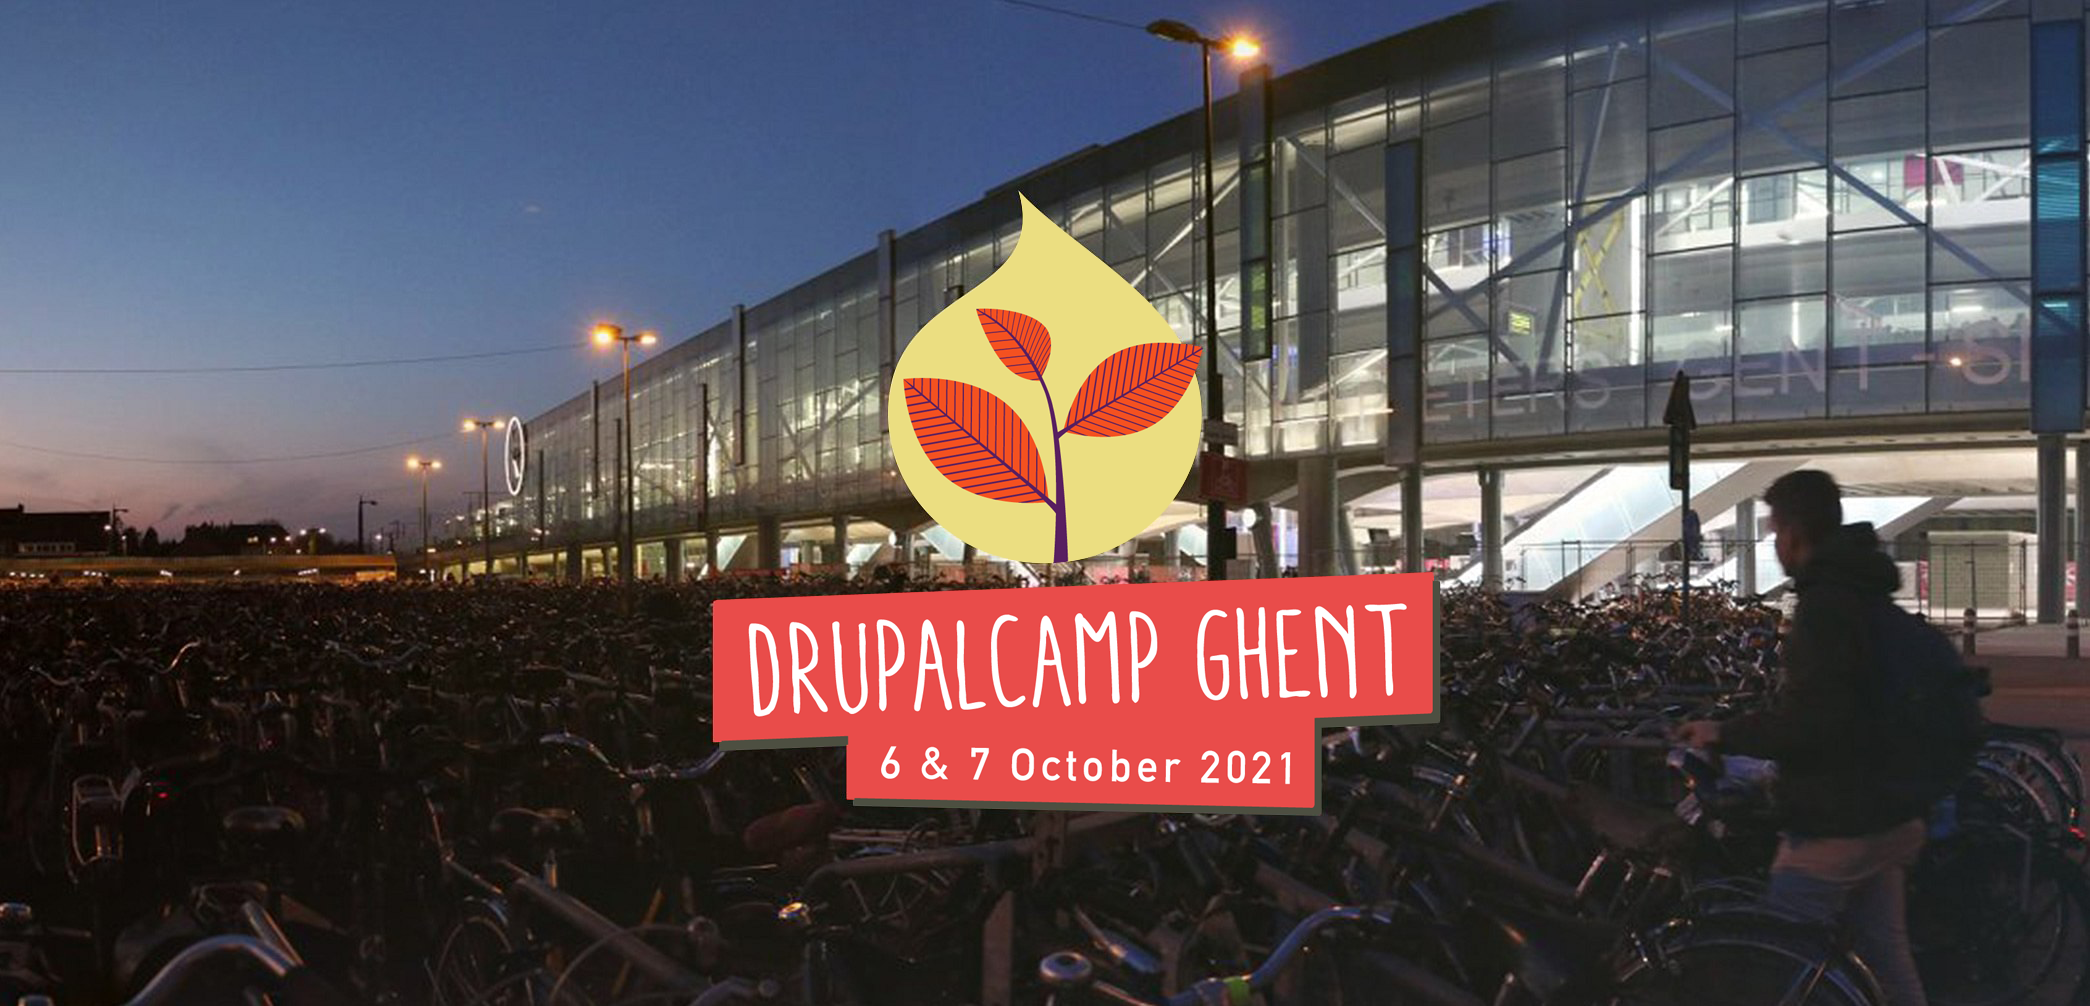 Drupalcamp Ghent 2021